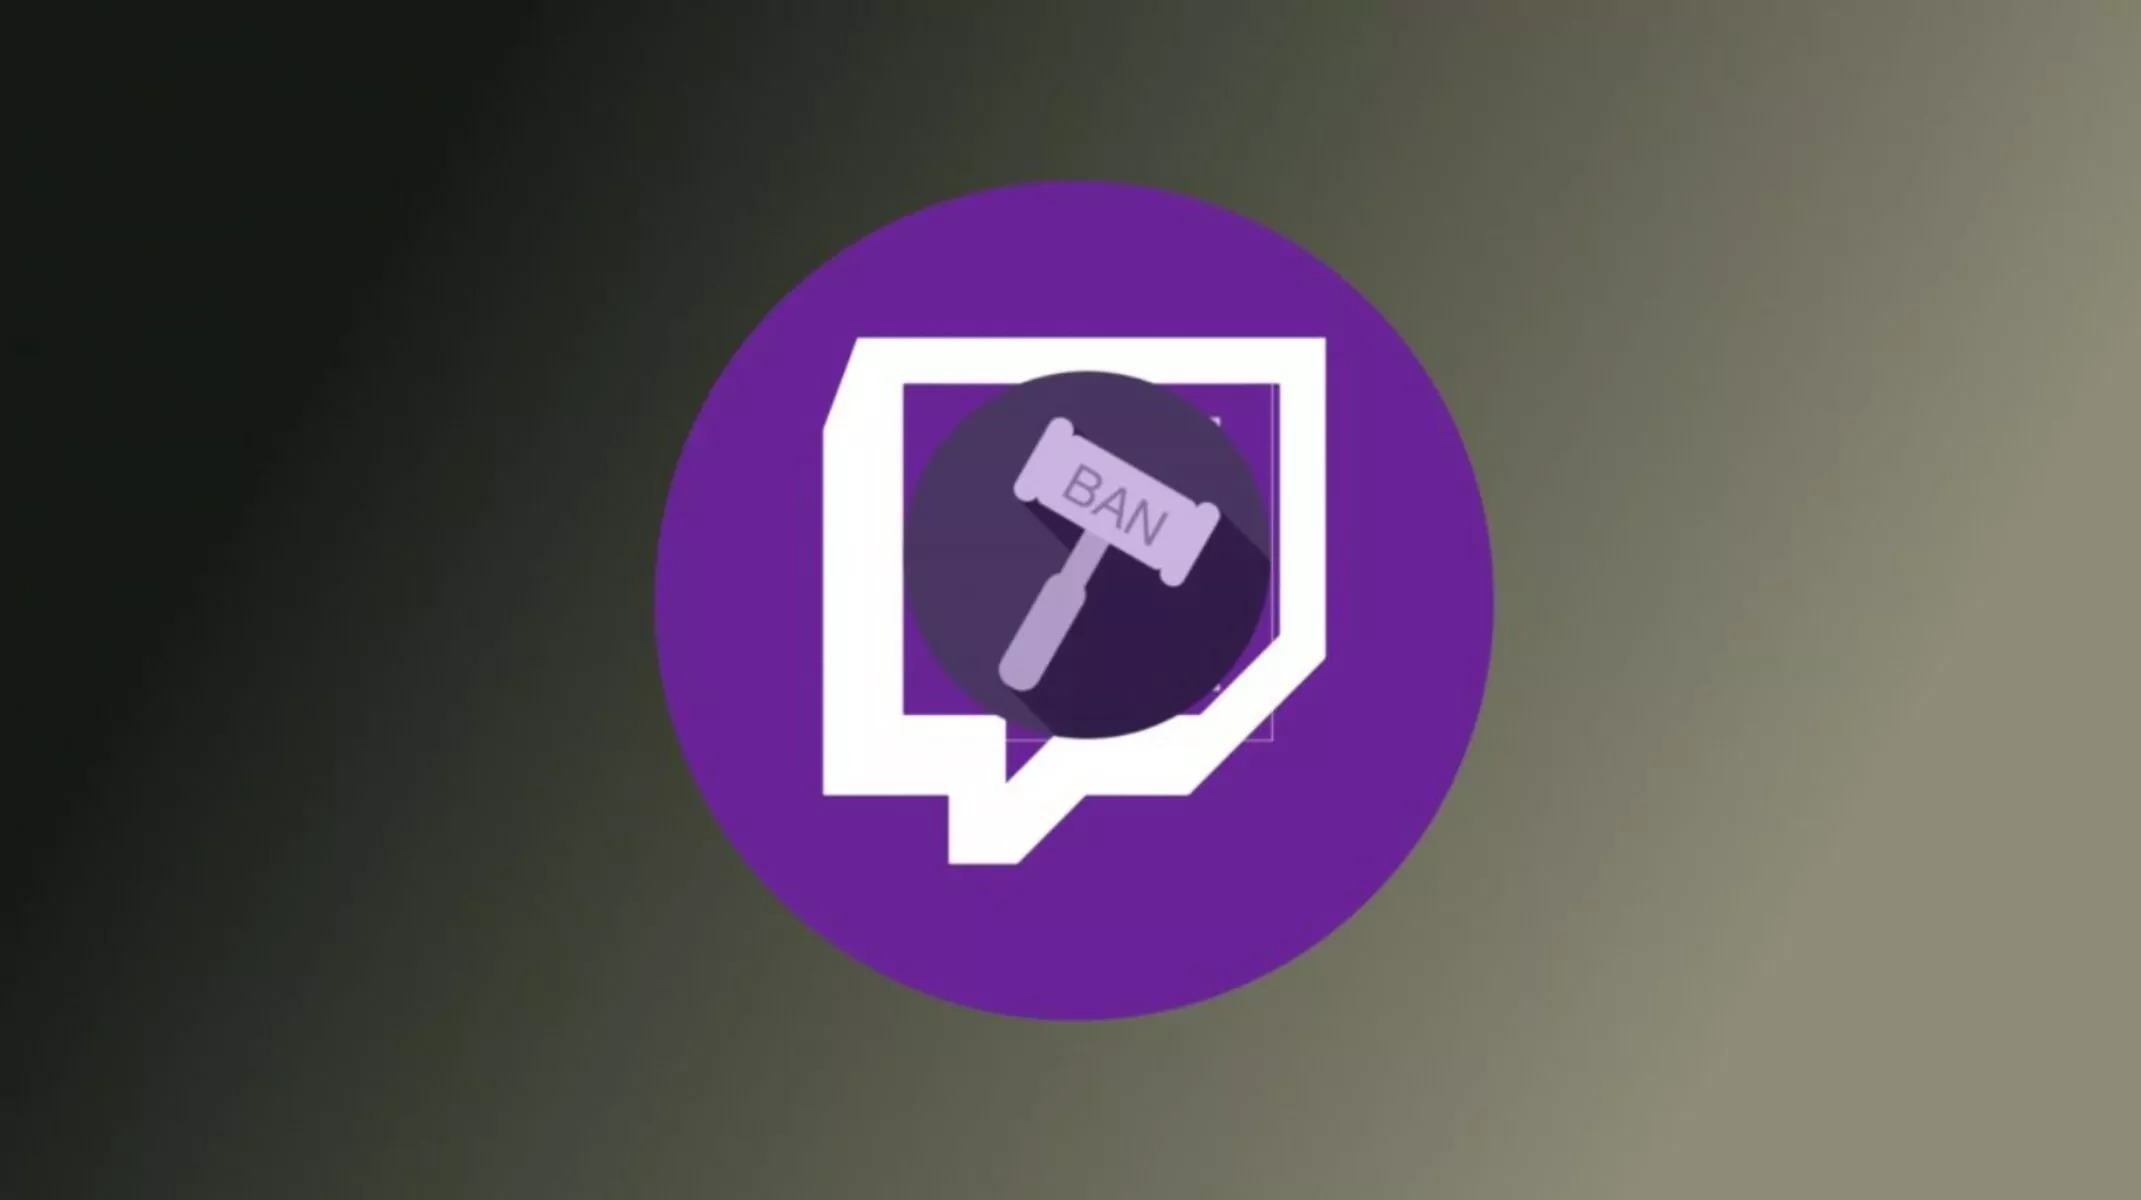 Come funzionano i nuovi strumenti di moderazione su Twitch